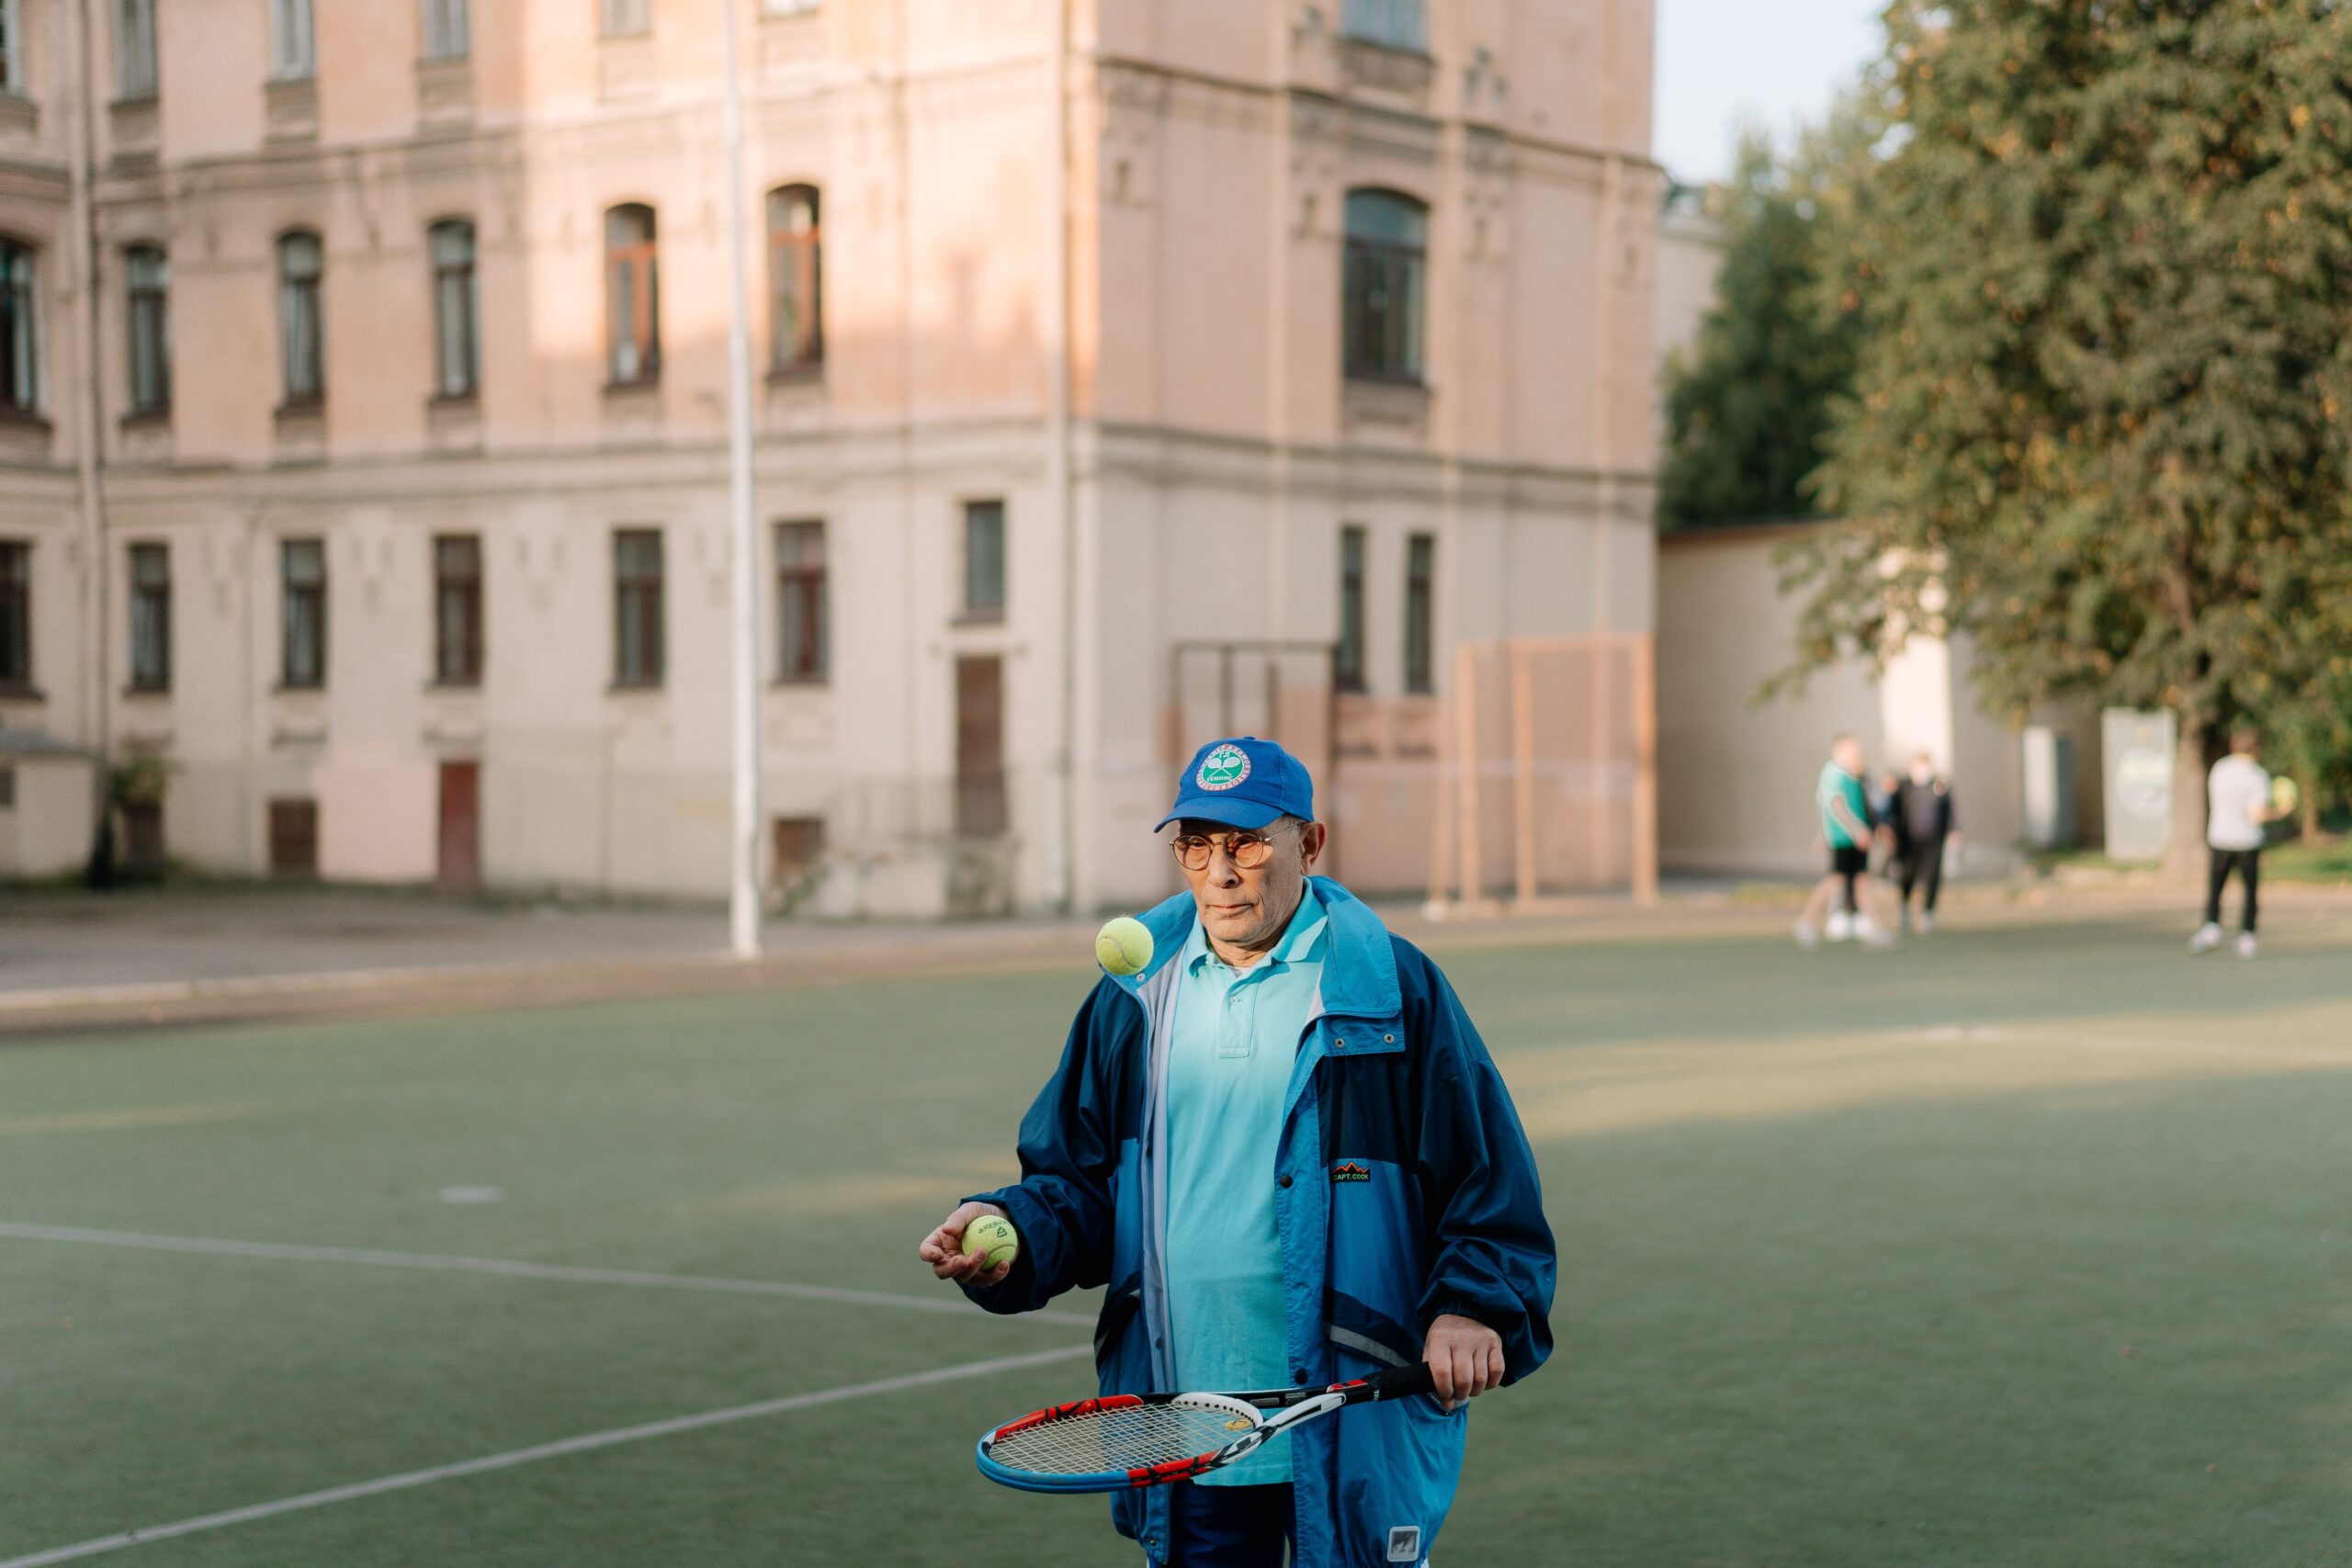 old man playing tennis